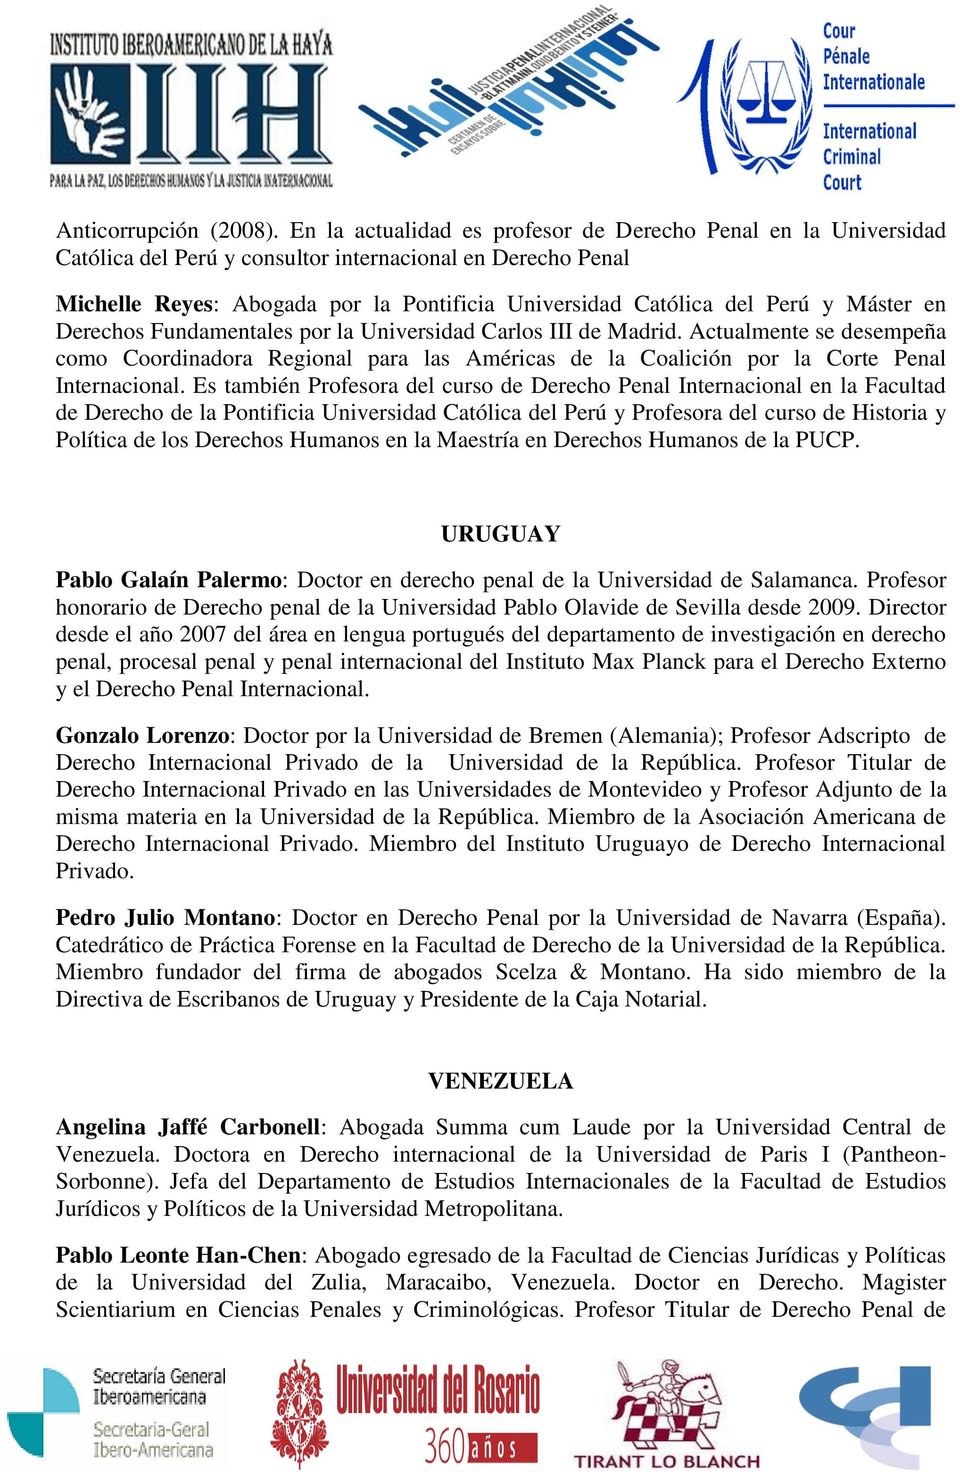 Máster en Derechos Fundamentales por la Universidad Carlos III de Madrid. Actualmente se desempeña como Coordinadora Regional para las Américas de la Coalición por la Corte Penal Internacional.